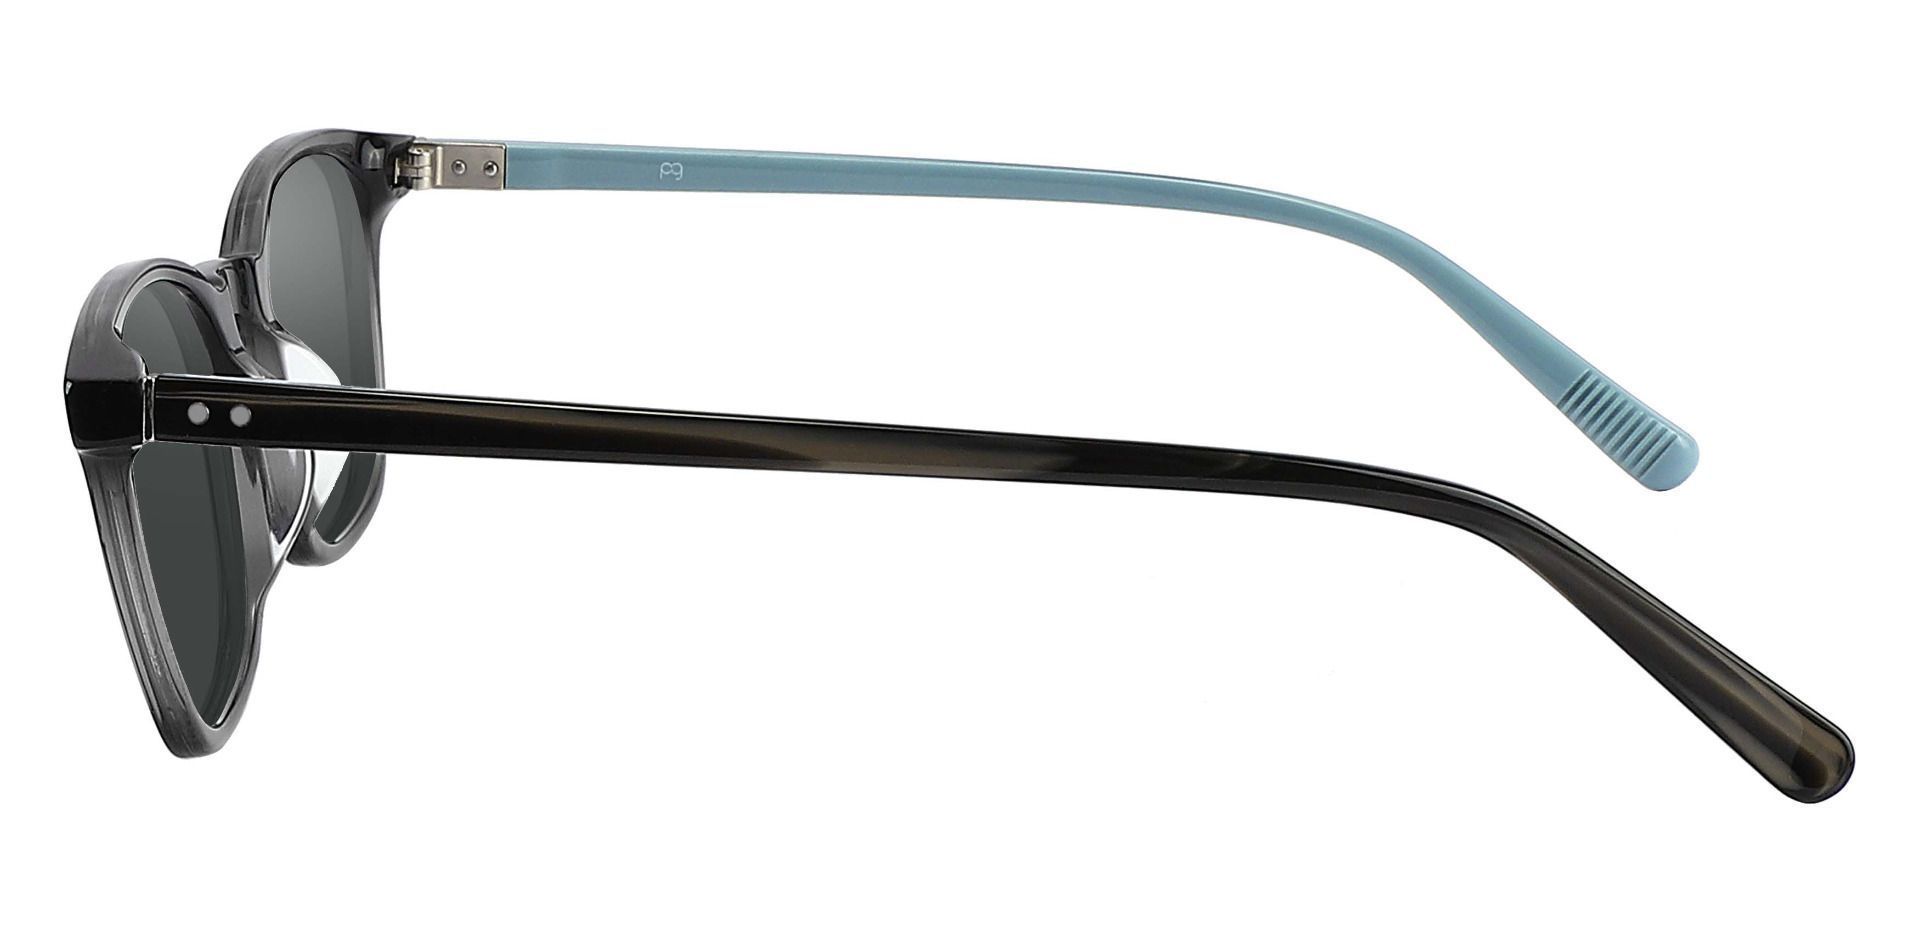 Alonzo Square Non-Rx Sunglasses - Gray Frame With Gray Lenses